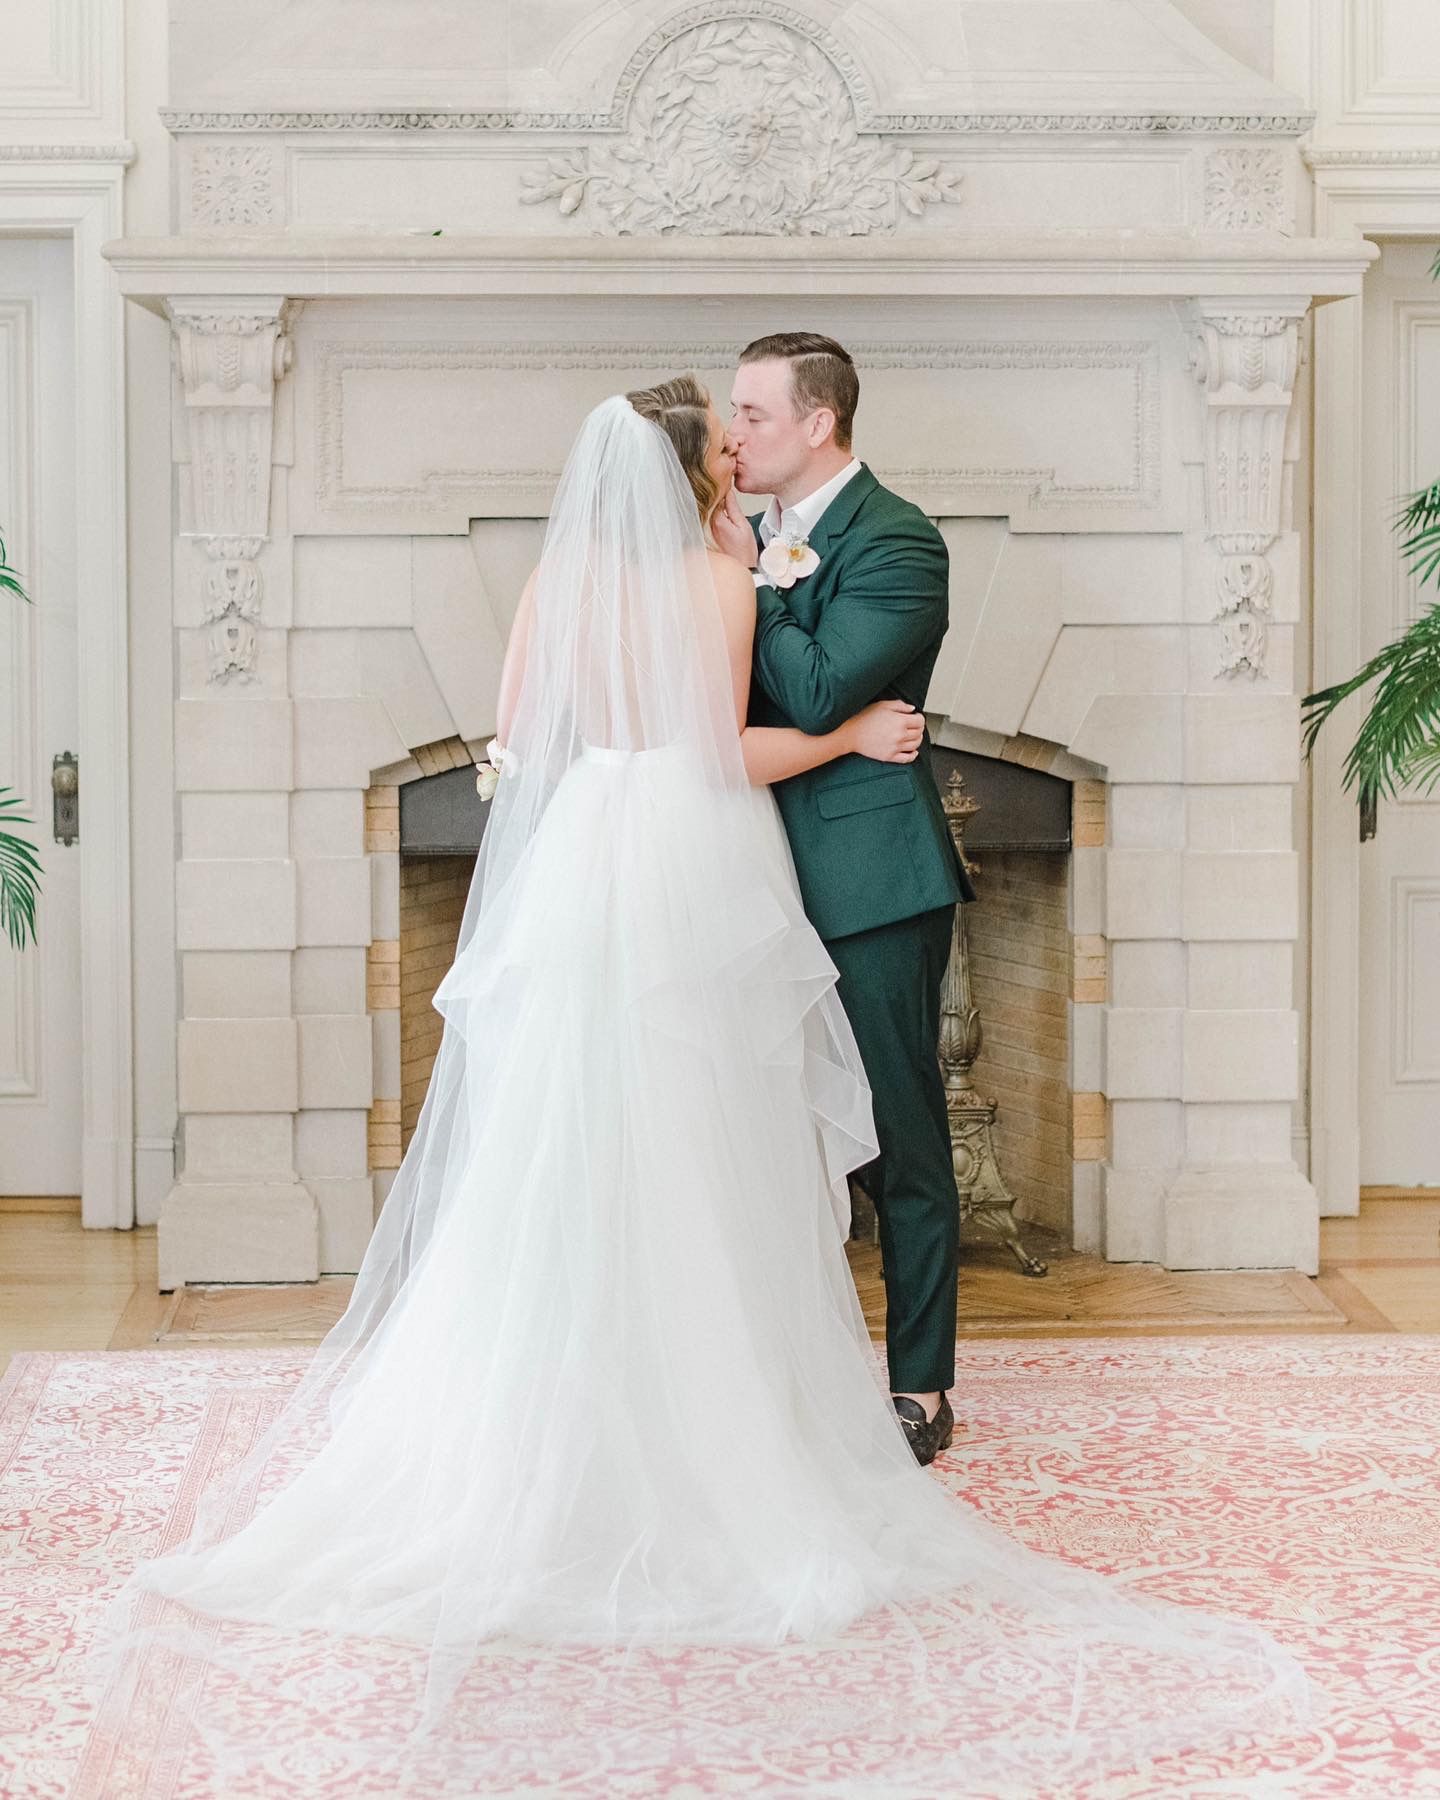 How to Easily Create a Custom Wedding Veil